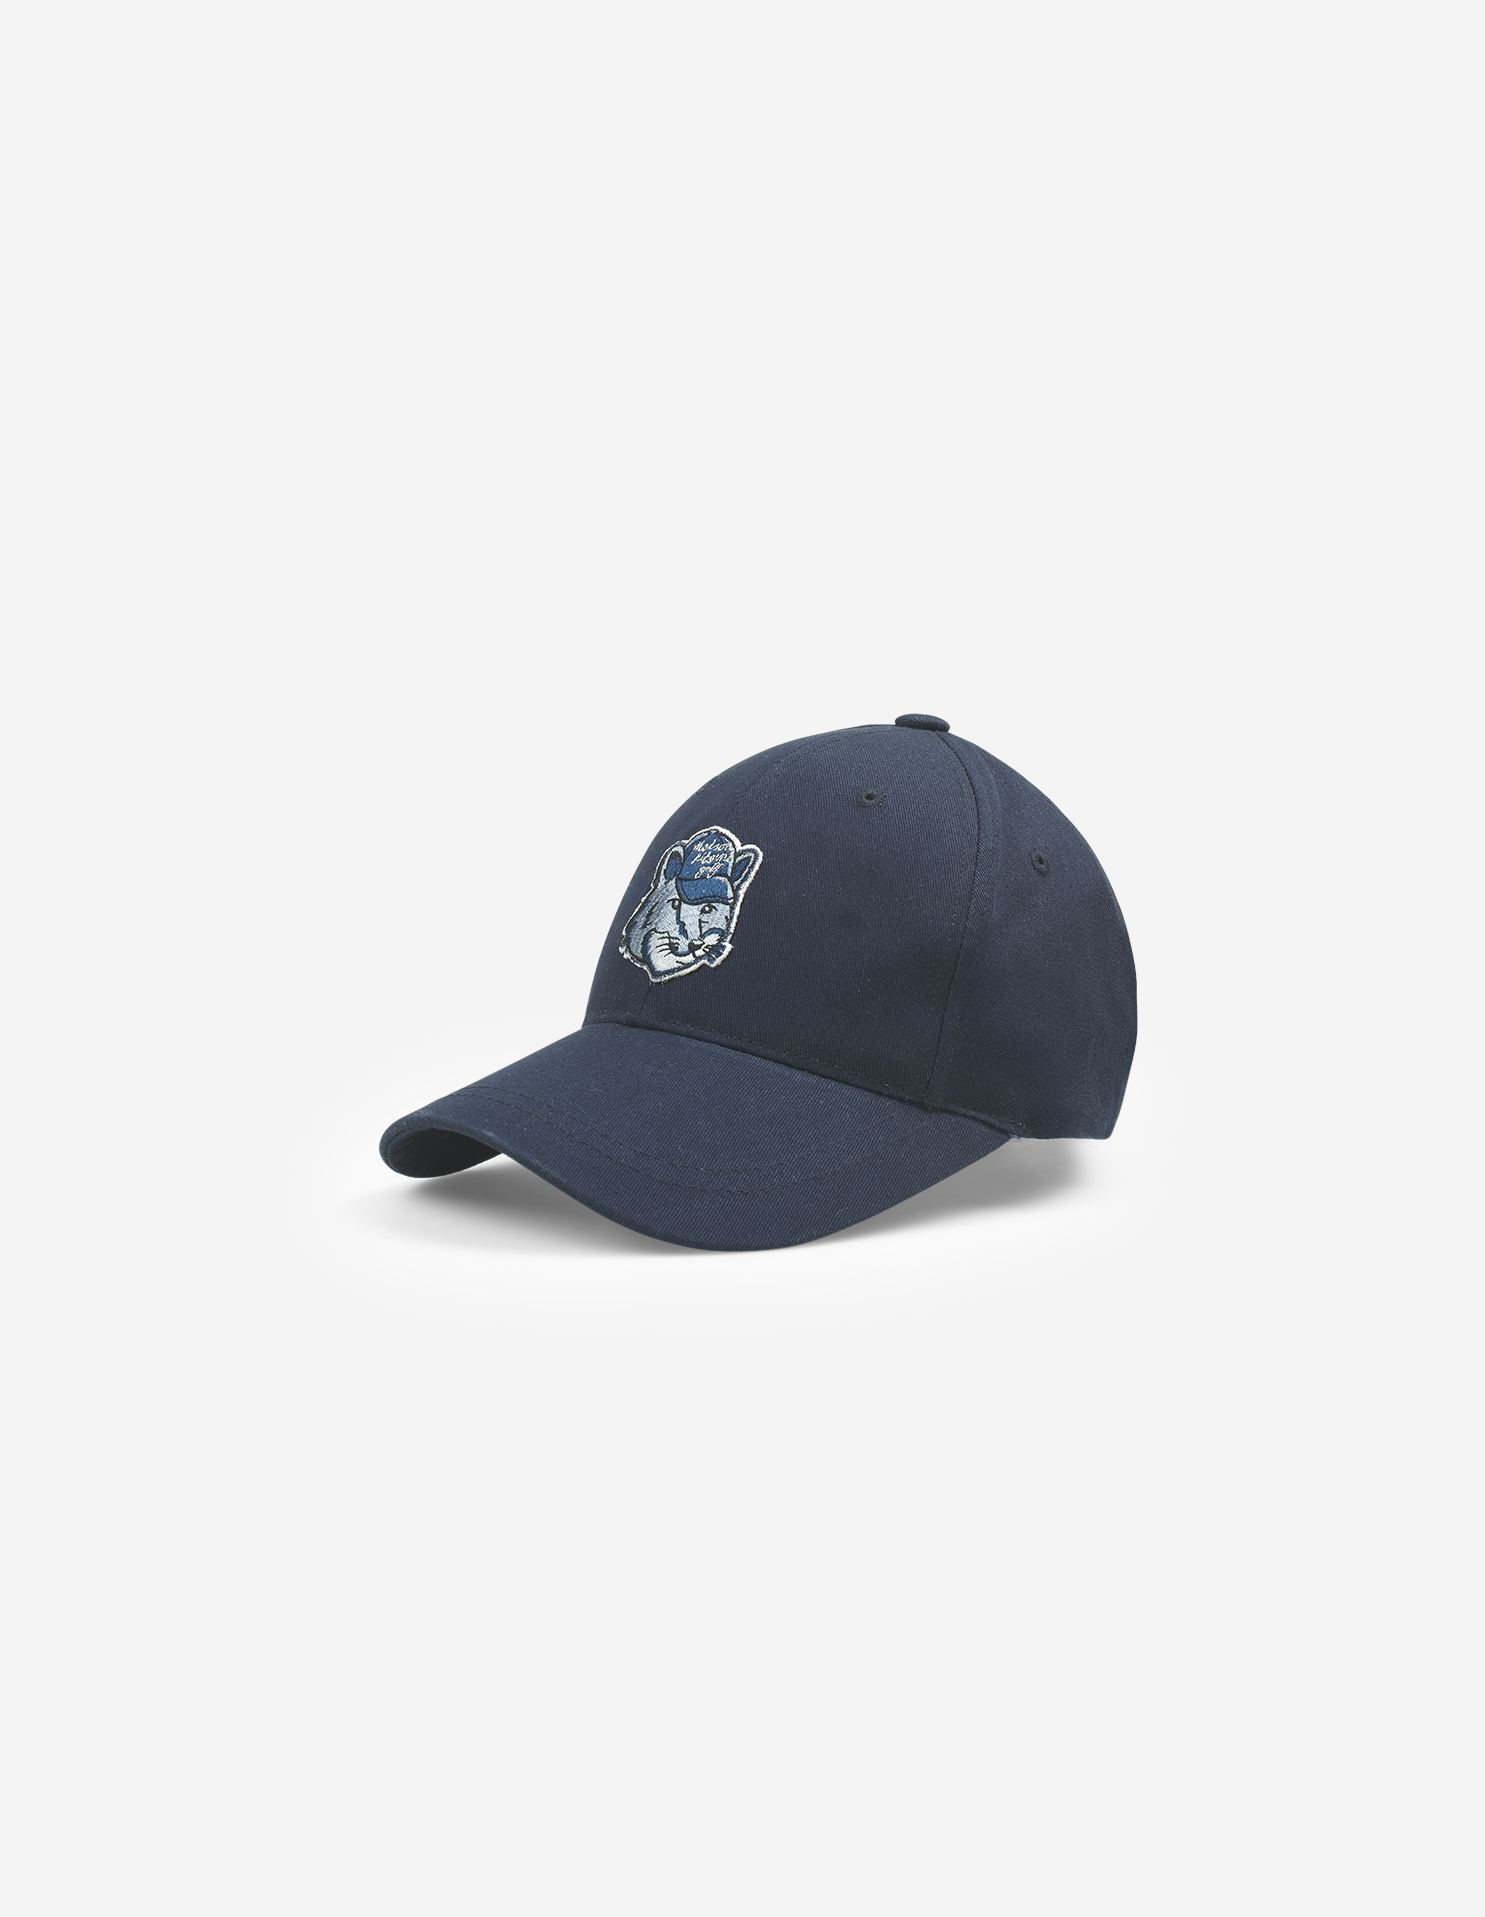 FOX HEAD BALL CAP